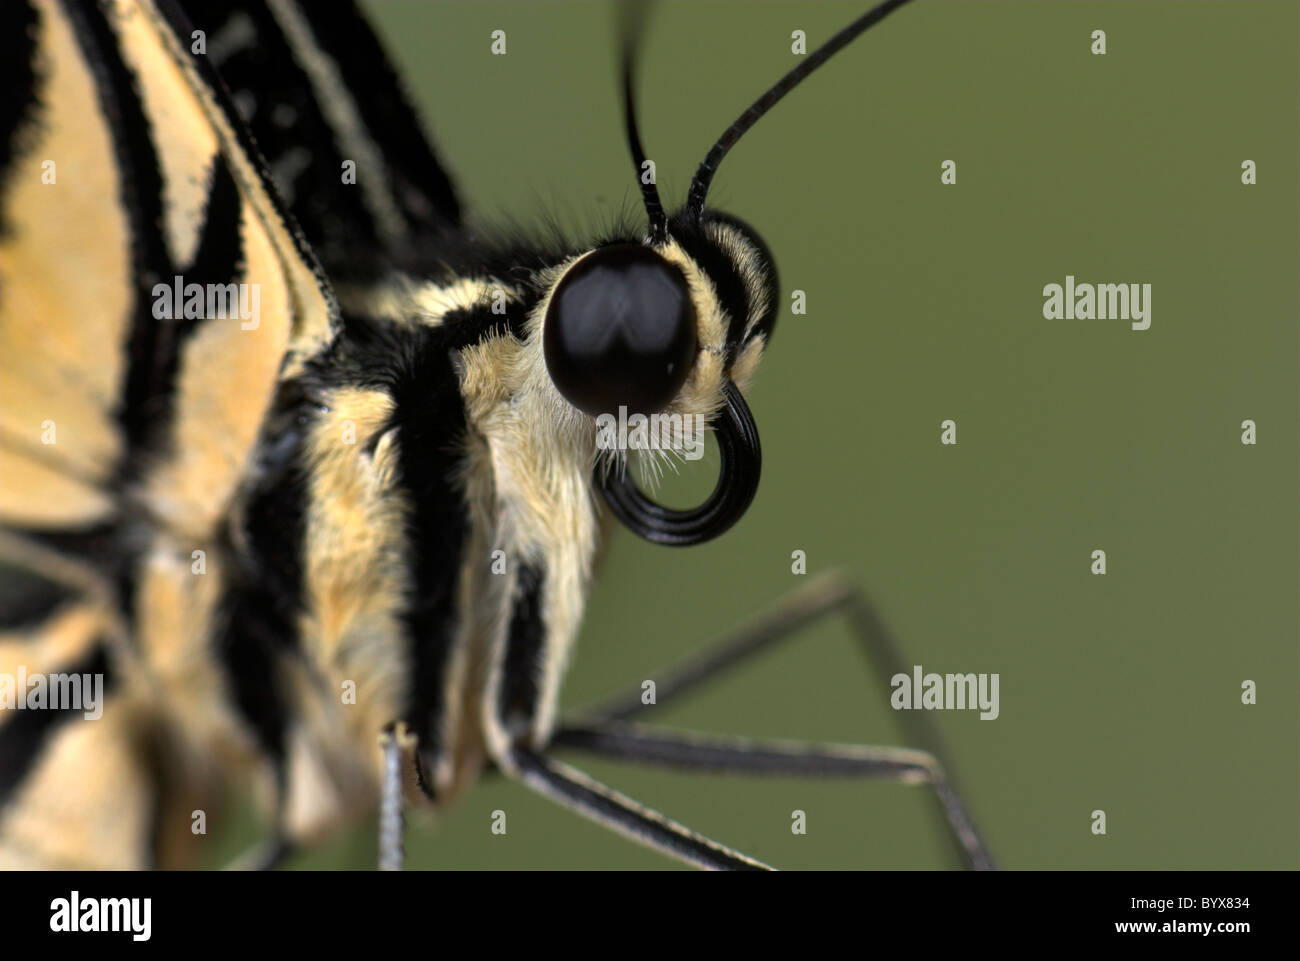 Lime Schwalbenschwanz Schmetterling Papilio Demoleus Asien Stockfoto